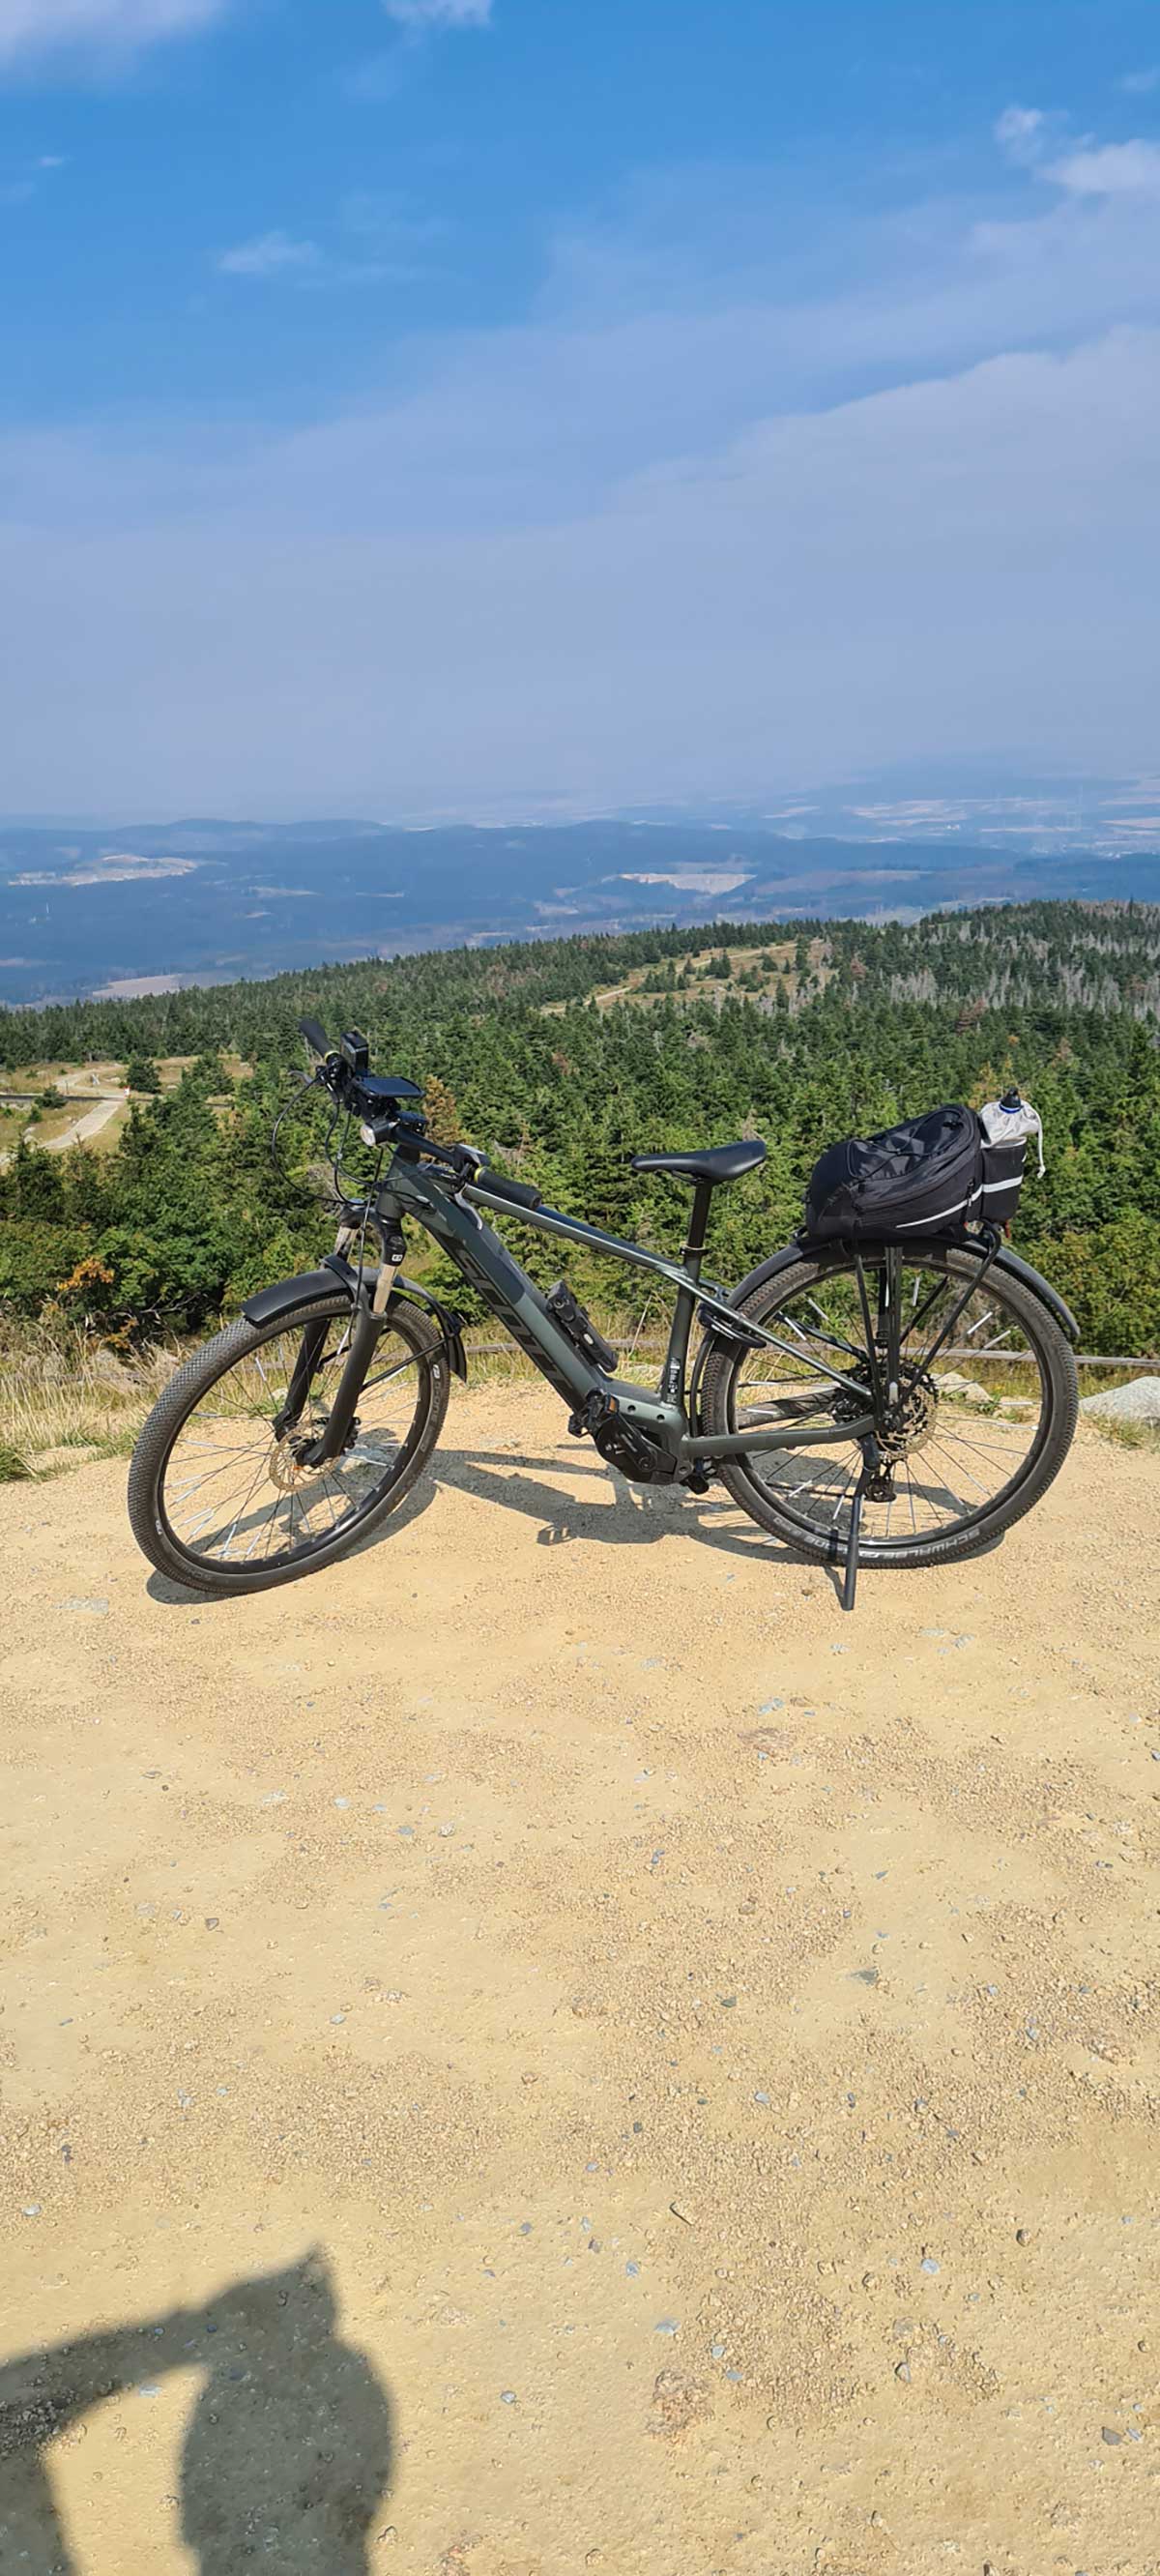 JobRad Moment von Heike mit grauem Fahrrad auf Anhöhe, im Hintergrund Aussicht auf Wälder und Ebene im Dunst